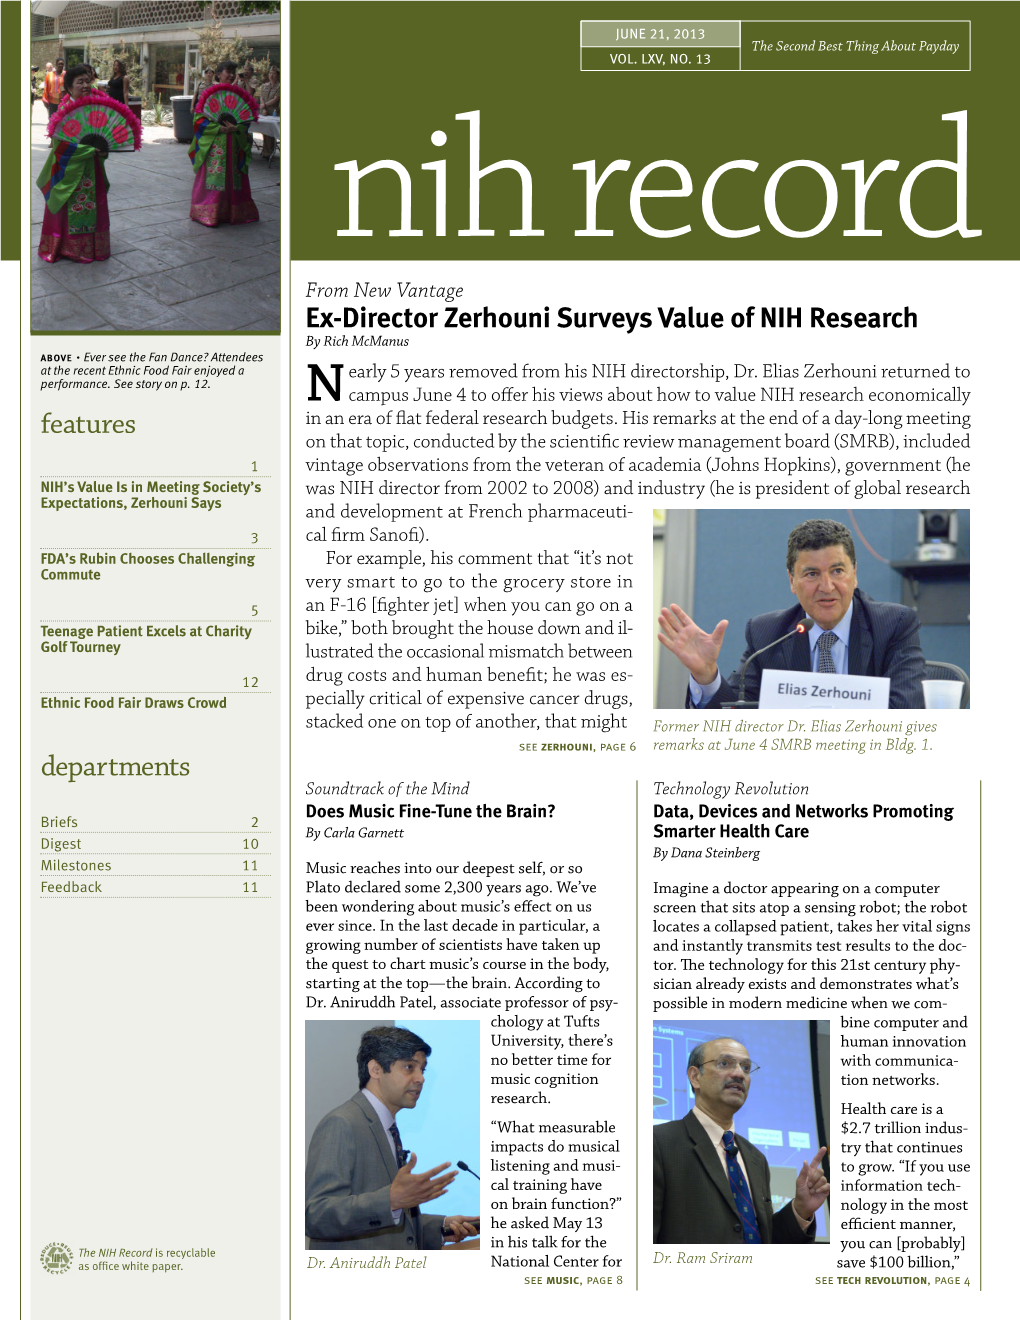 June 21, 2013, NIH Record, Vol. LXV, No. 13